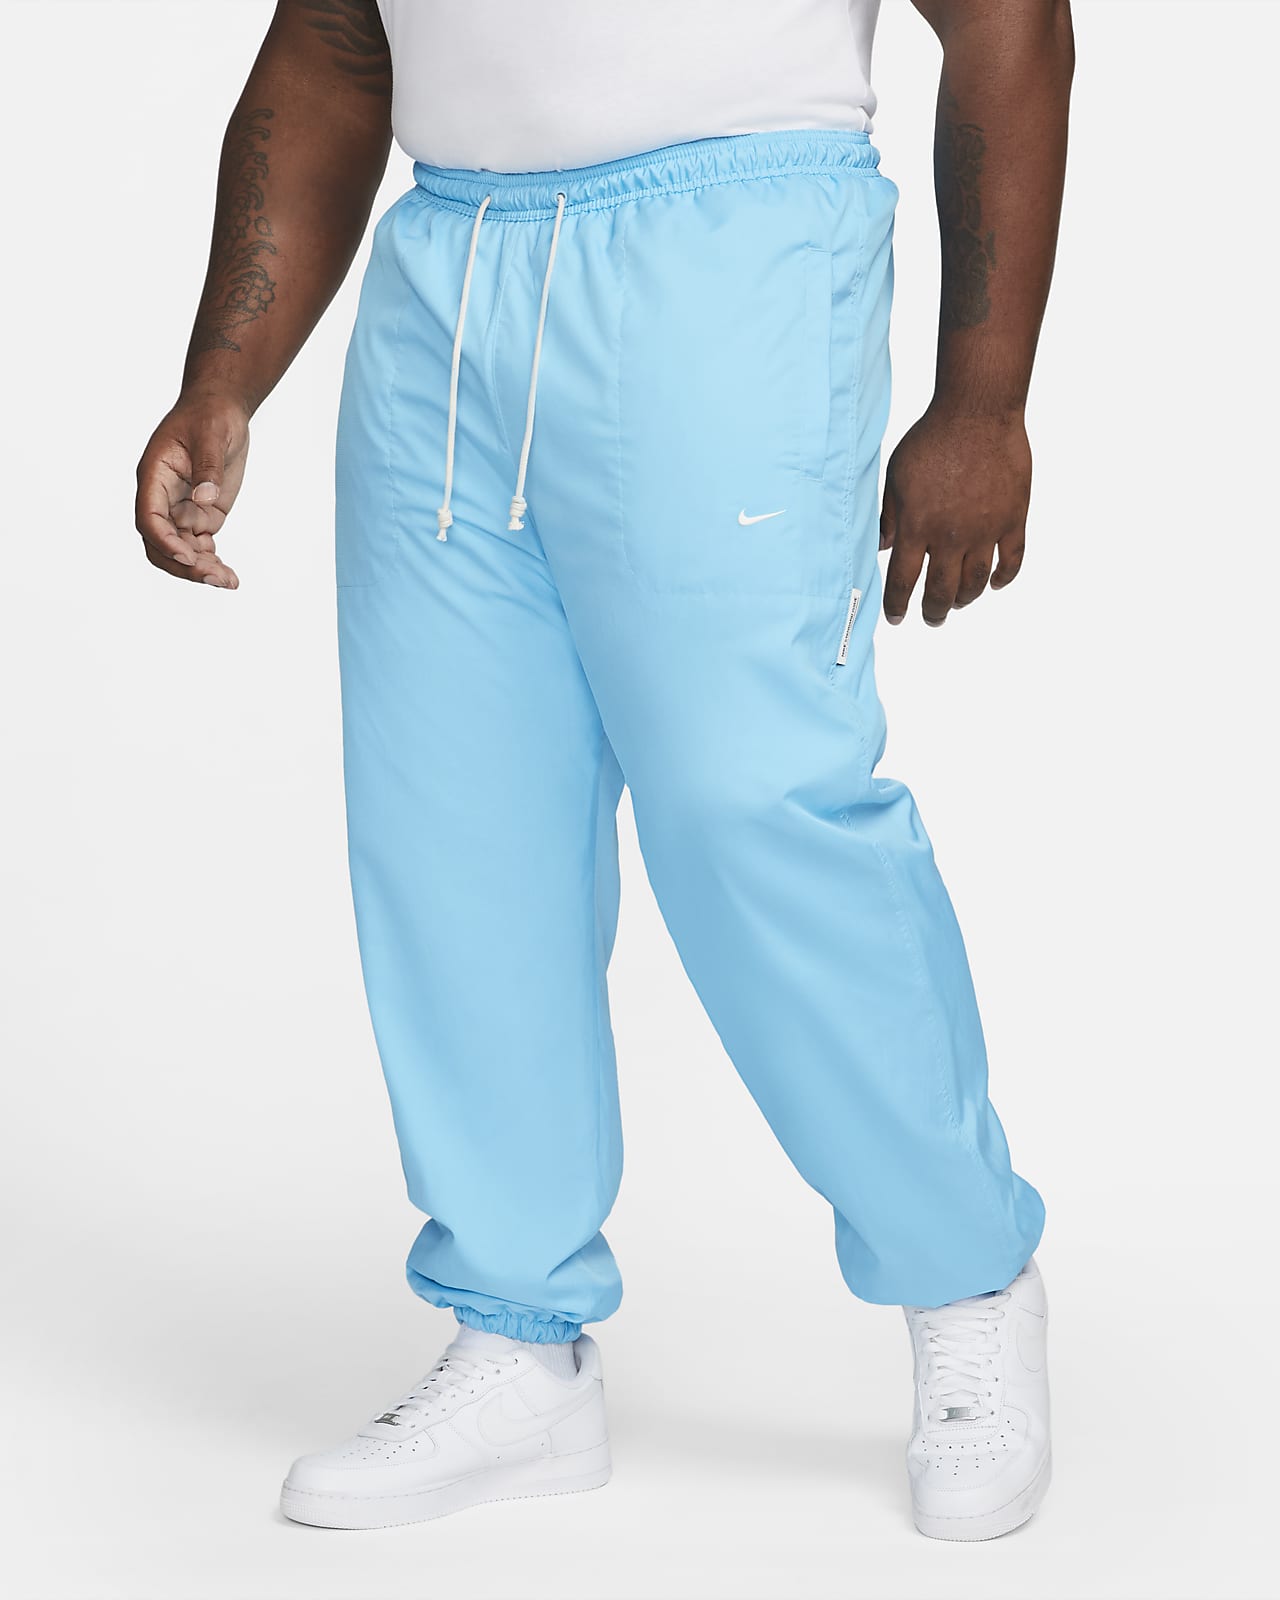 Pants de básquetbol acondicionados para el invierno para hombre Nike Therma-FIT Standard Issue